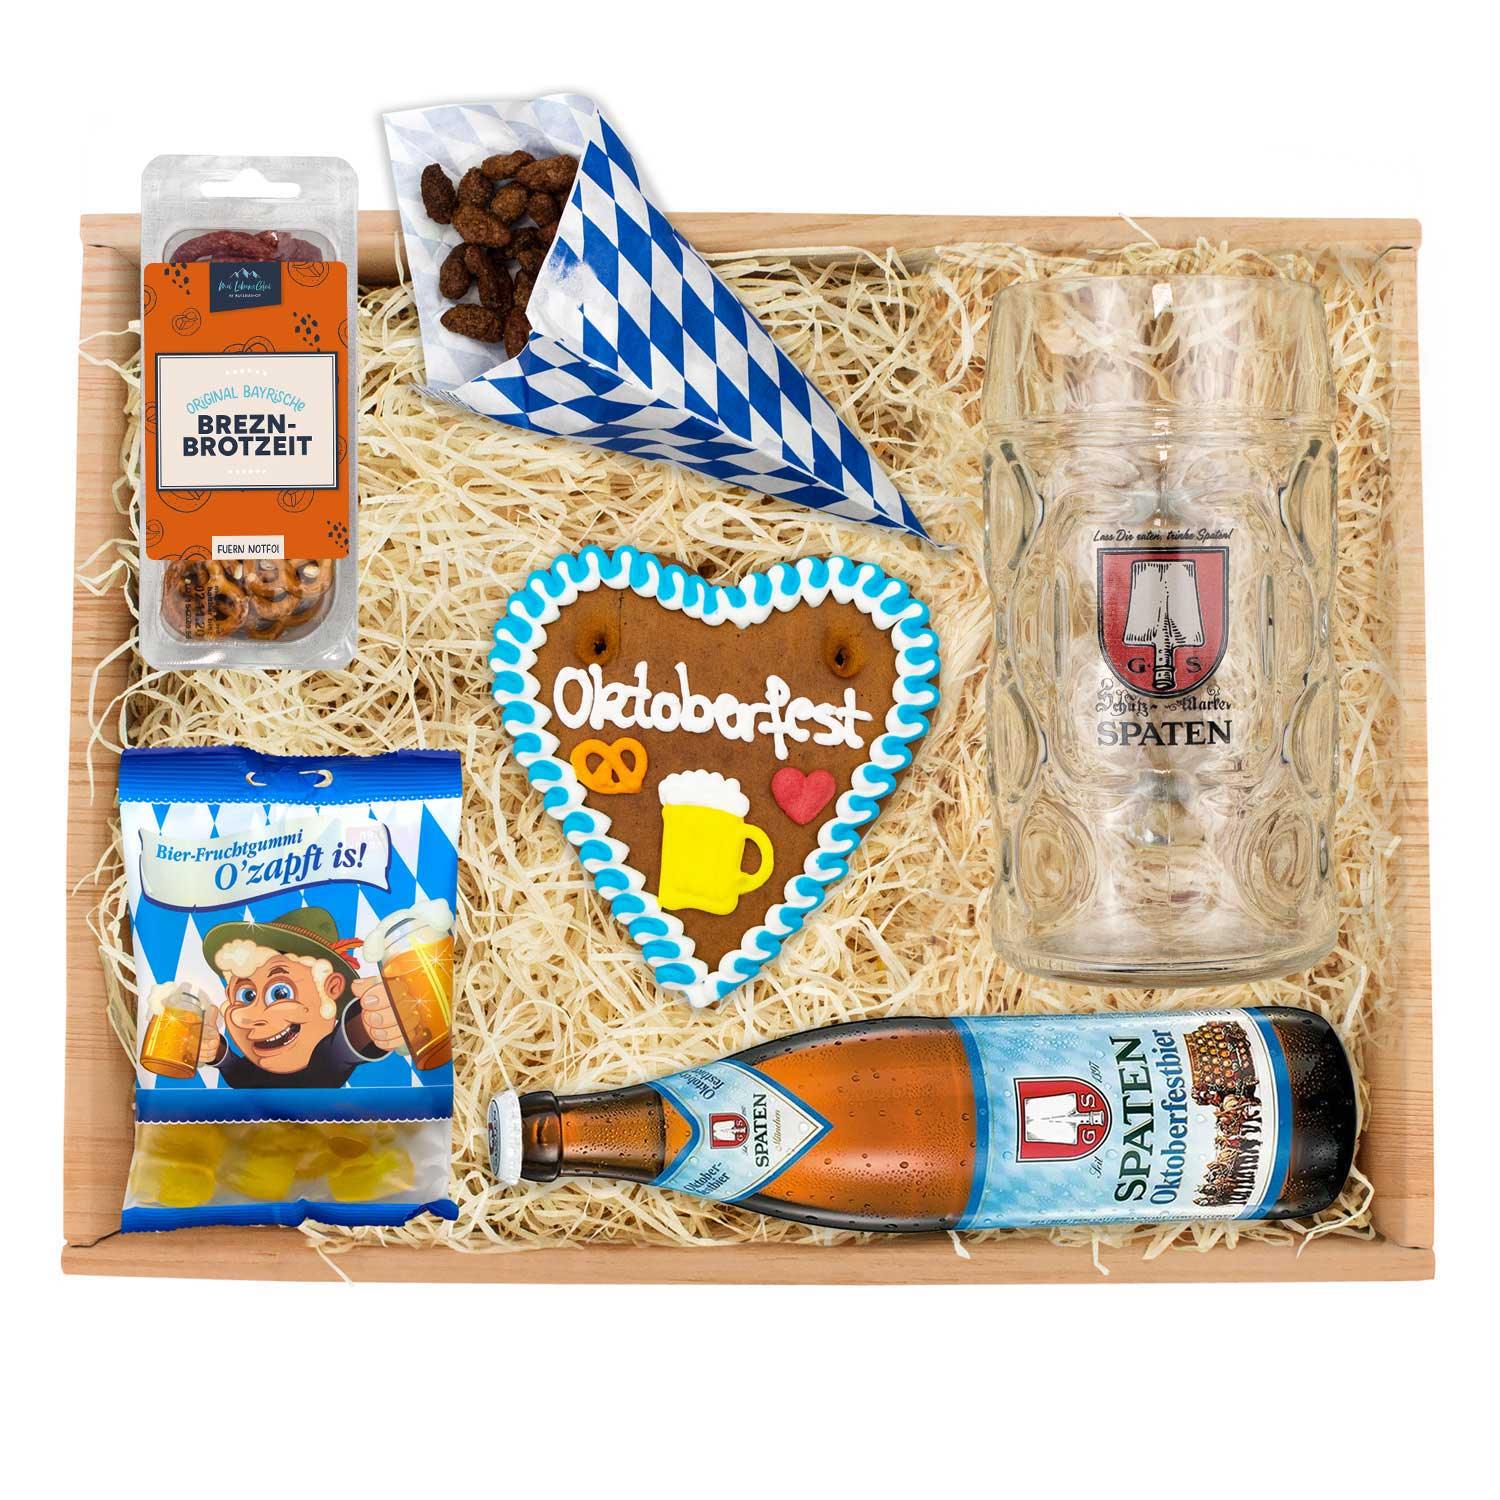 Oktoberfest-Box "Spaten" - bavariashop - mei LebensGfui